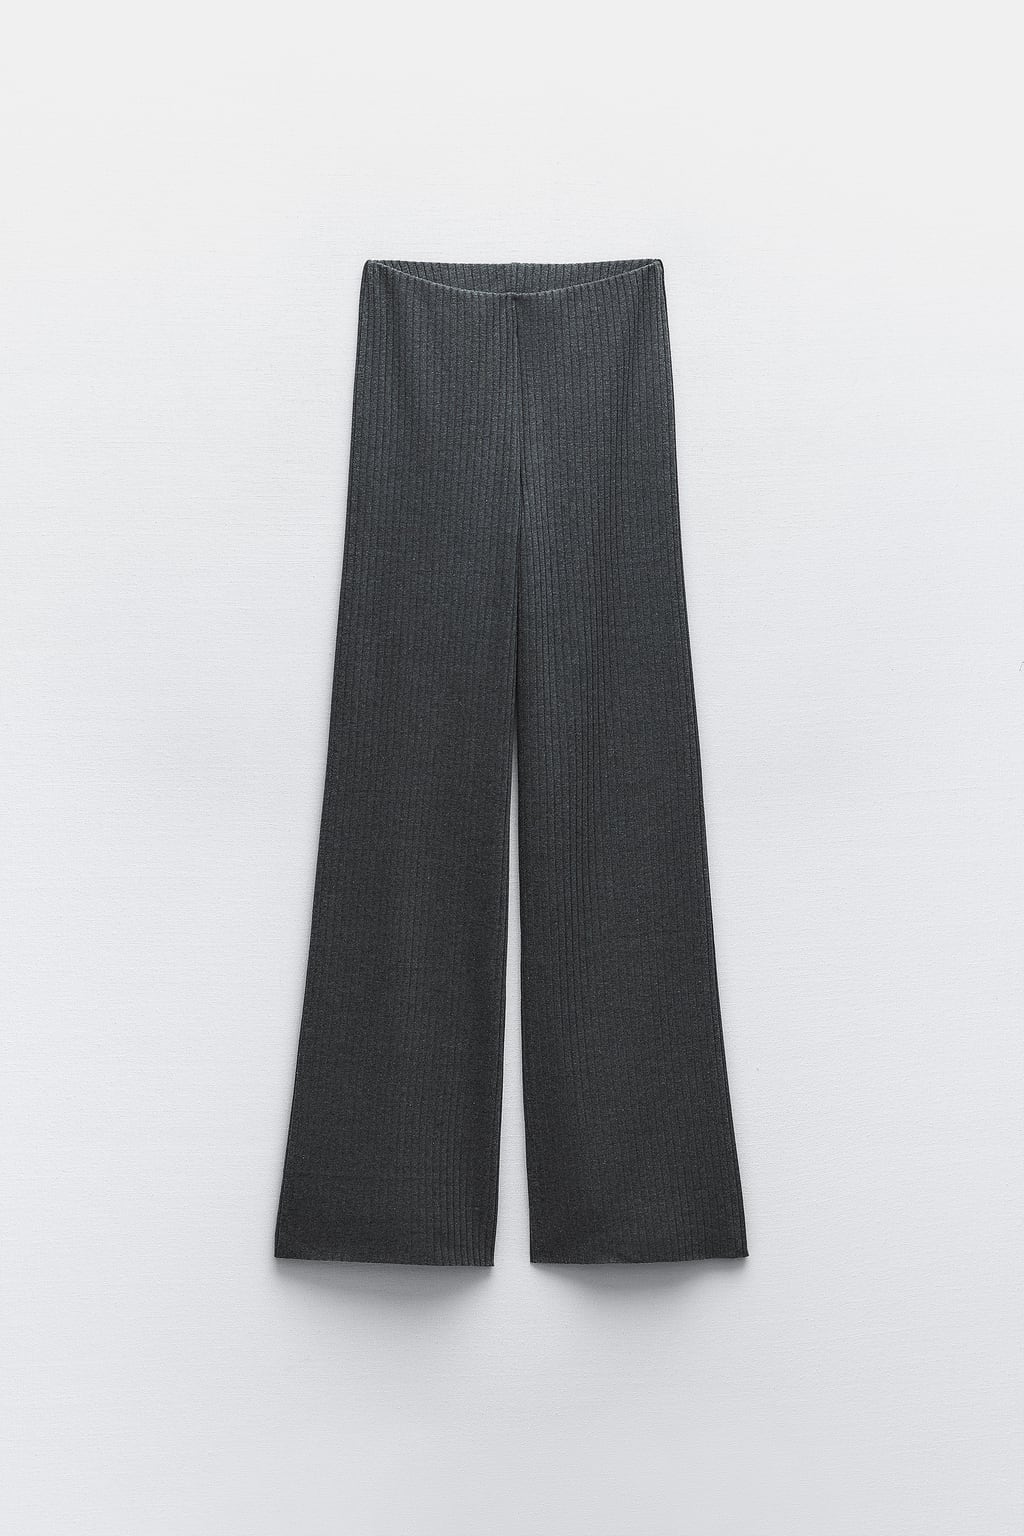 Широкие брюки в рубчик ZARA, серый мергель широкие брюки в рубчик zara серый мергель